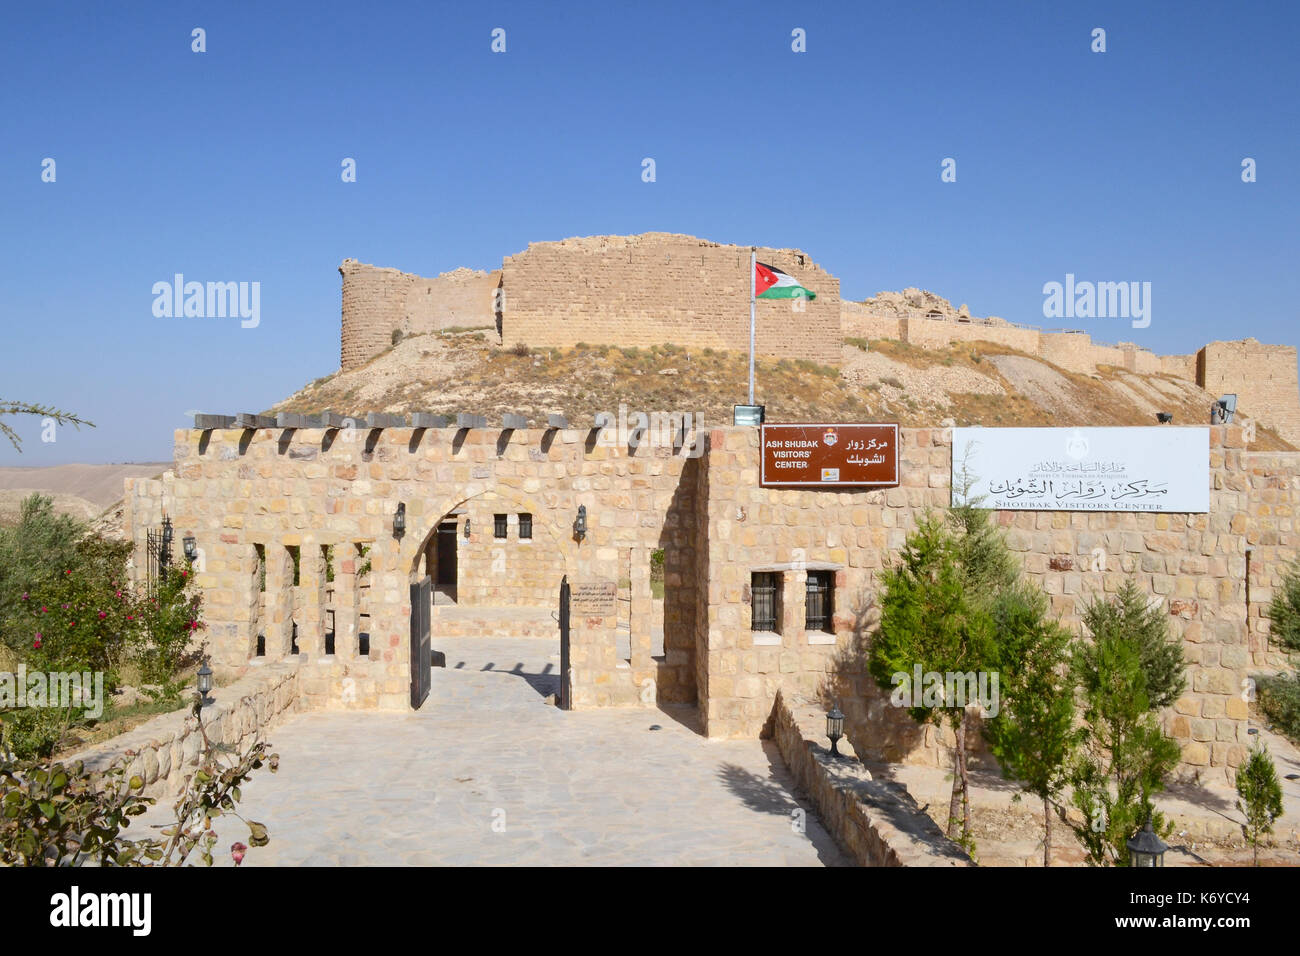 Ceneri shubak castello del centro visitatori, Giordania. Il castello è un popolare punto di sosta sulla strada per Petra. Foto Stock